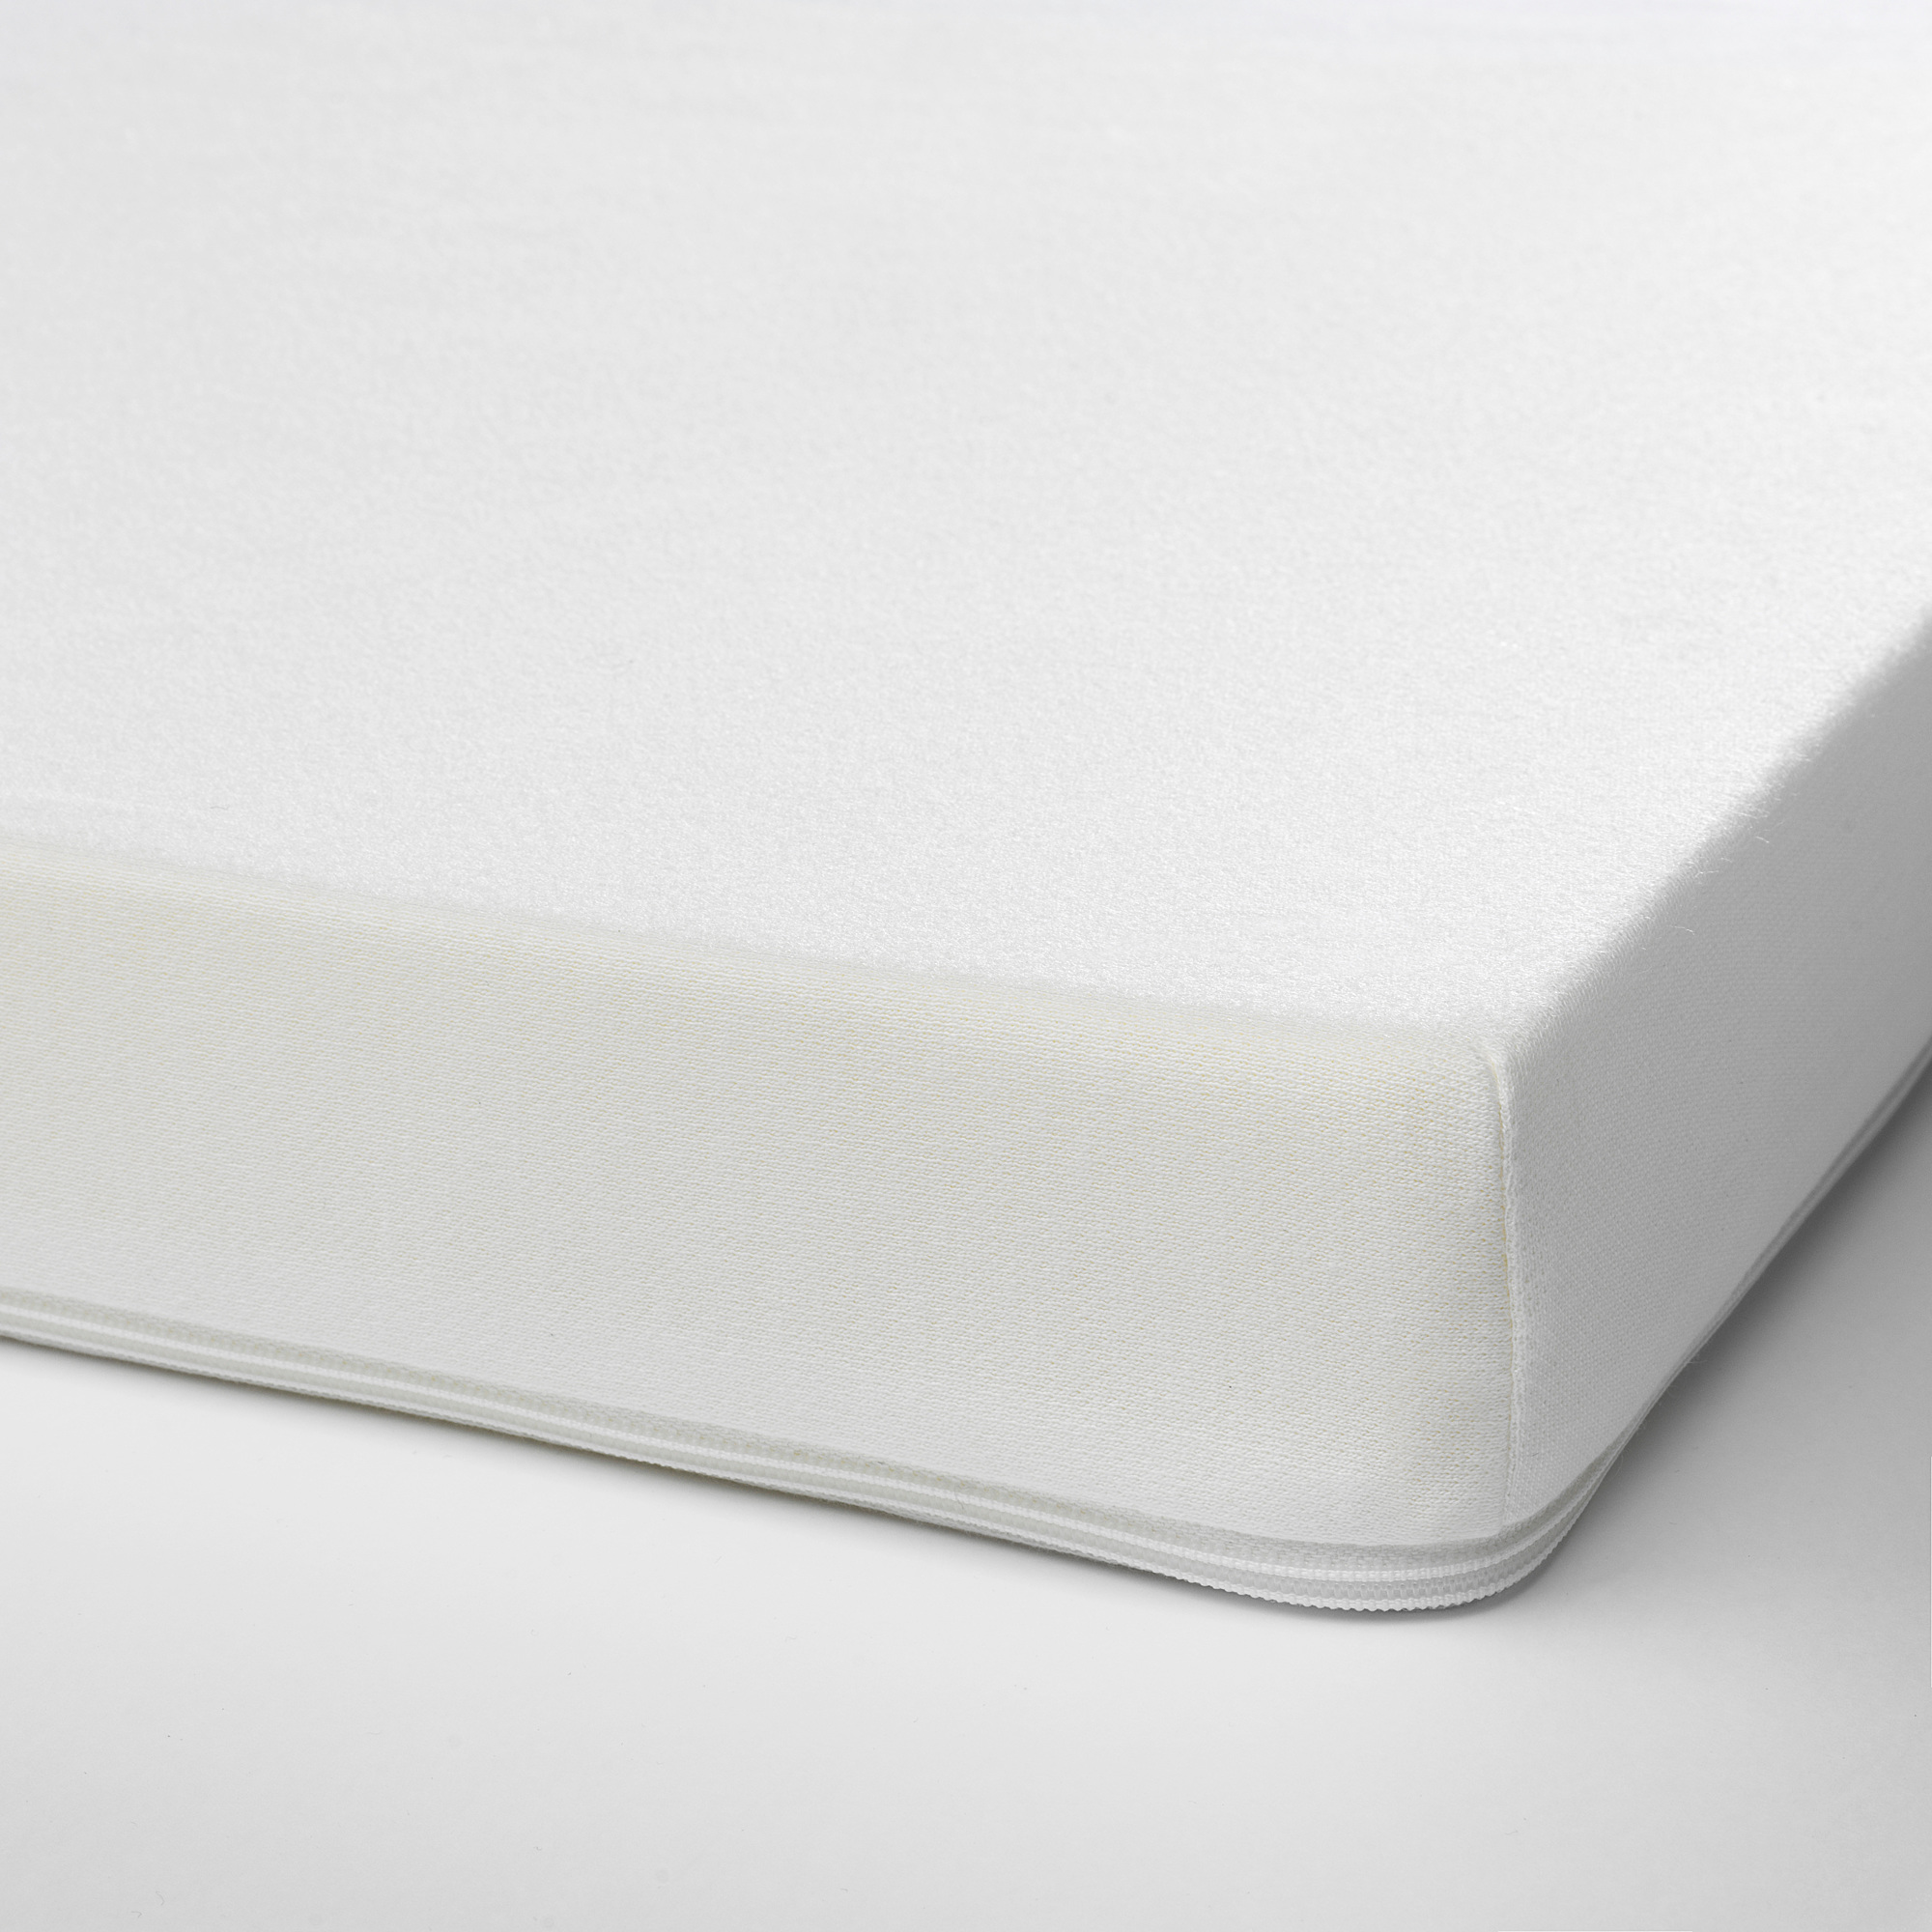 PELLEPLUTT foam mattress for cot